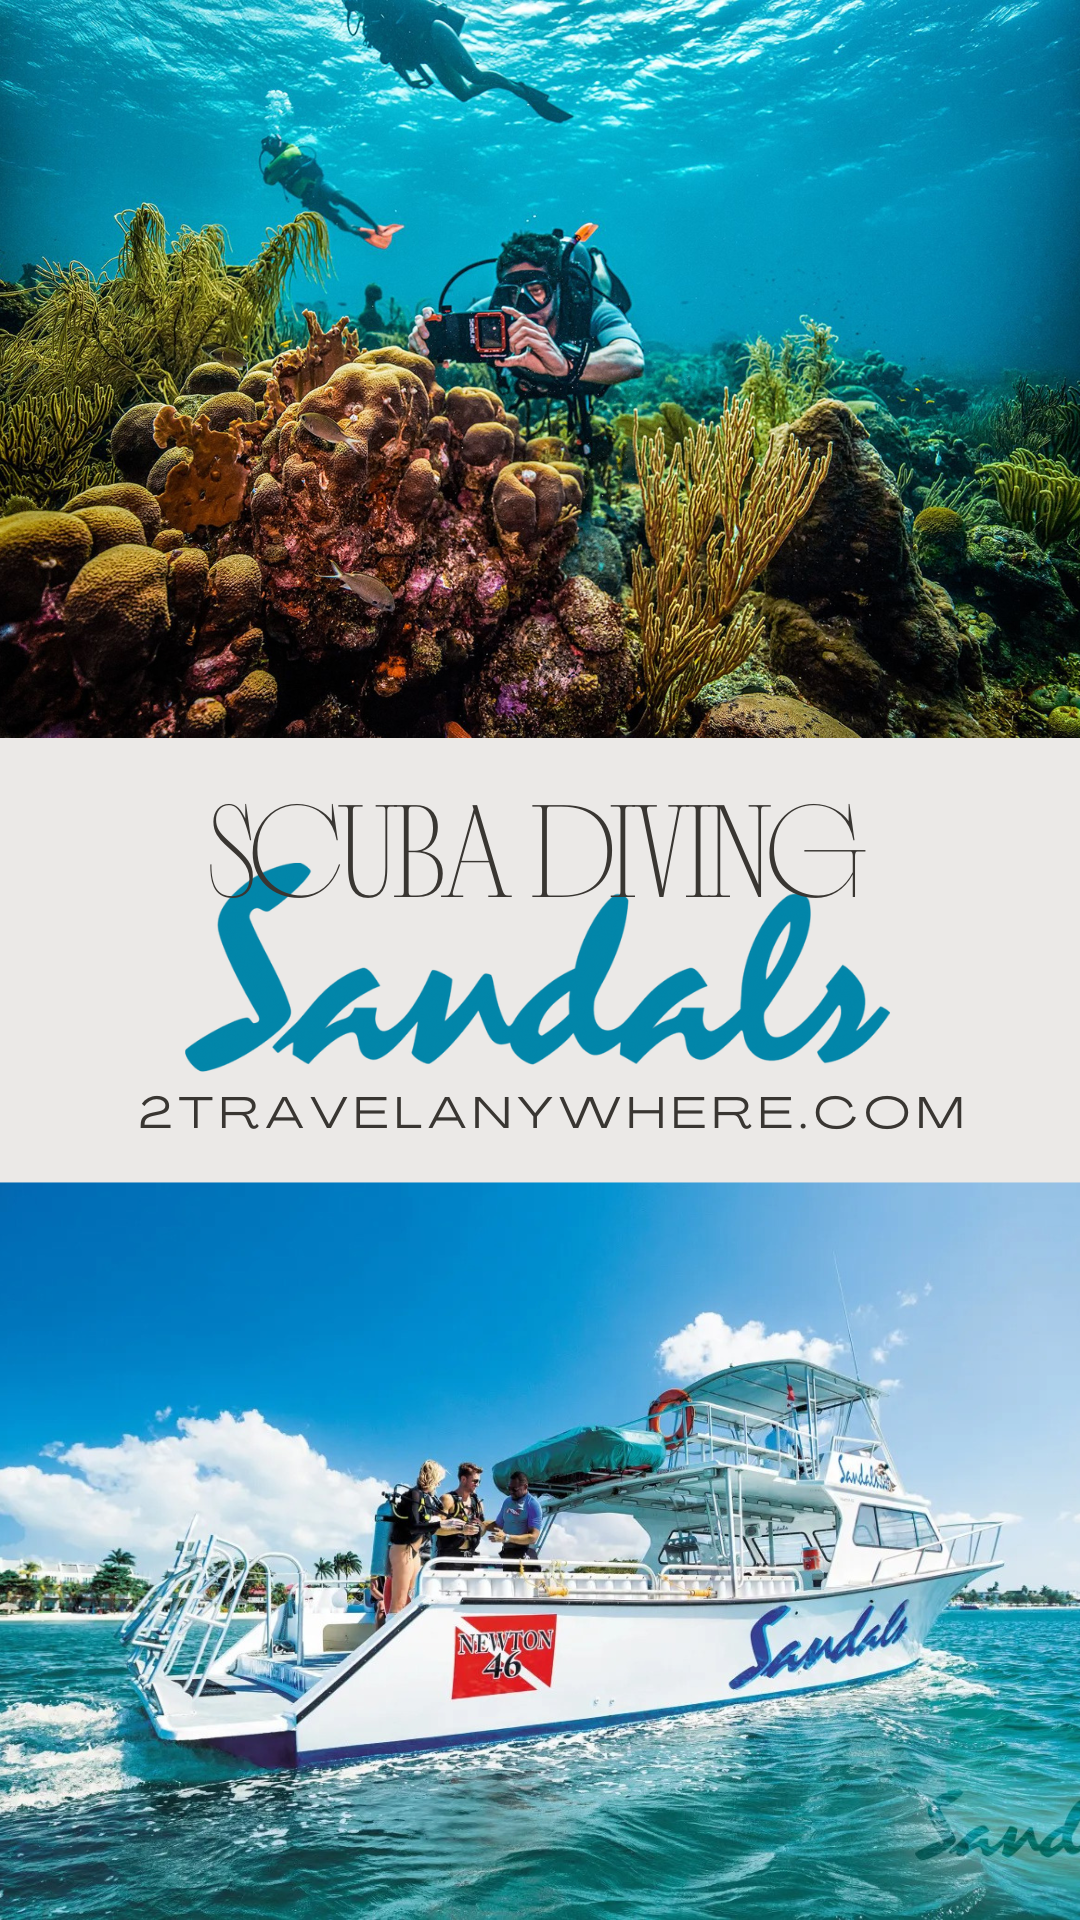 Sandals Resorts Scuba Diving